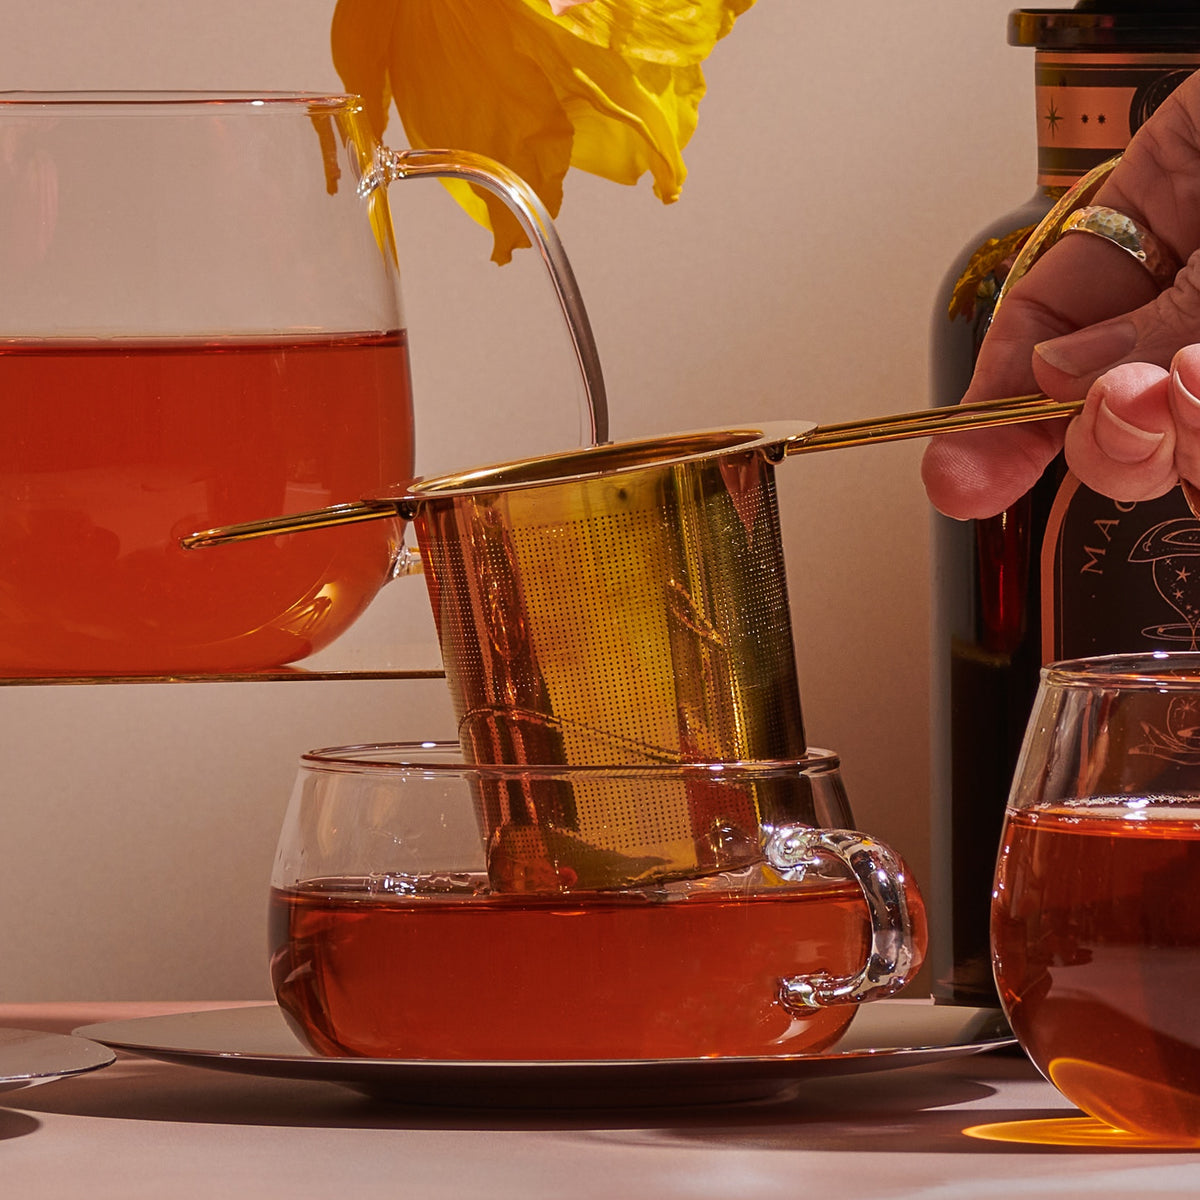 Midas Touch: Golden-Hued Tea Strainer